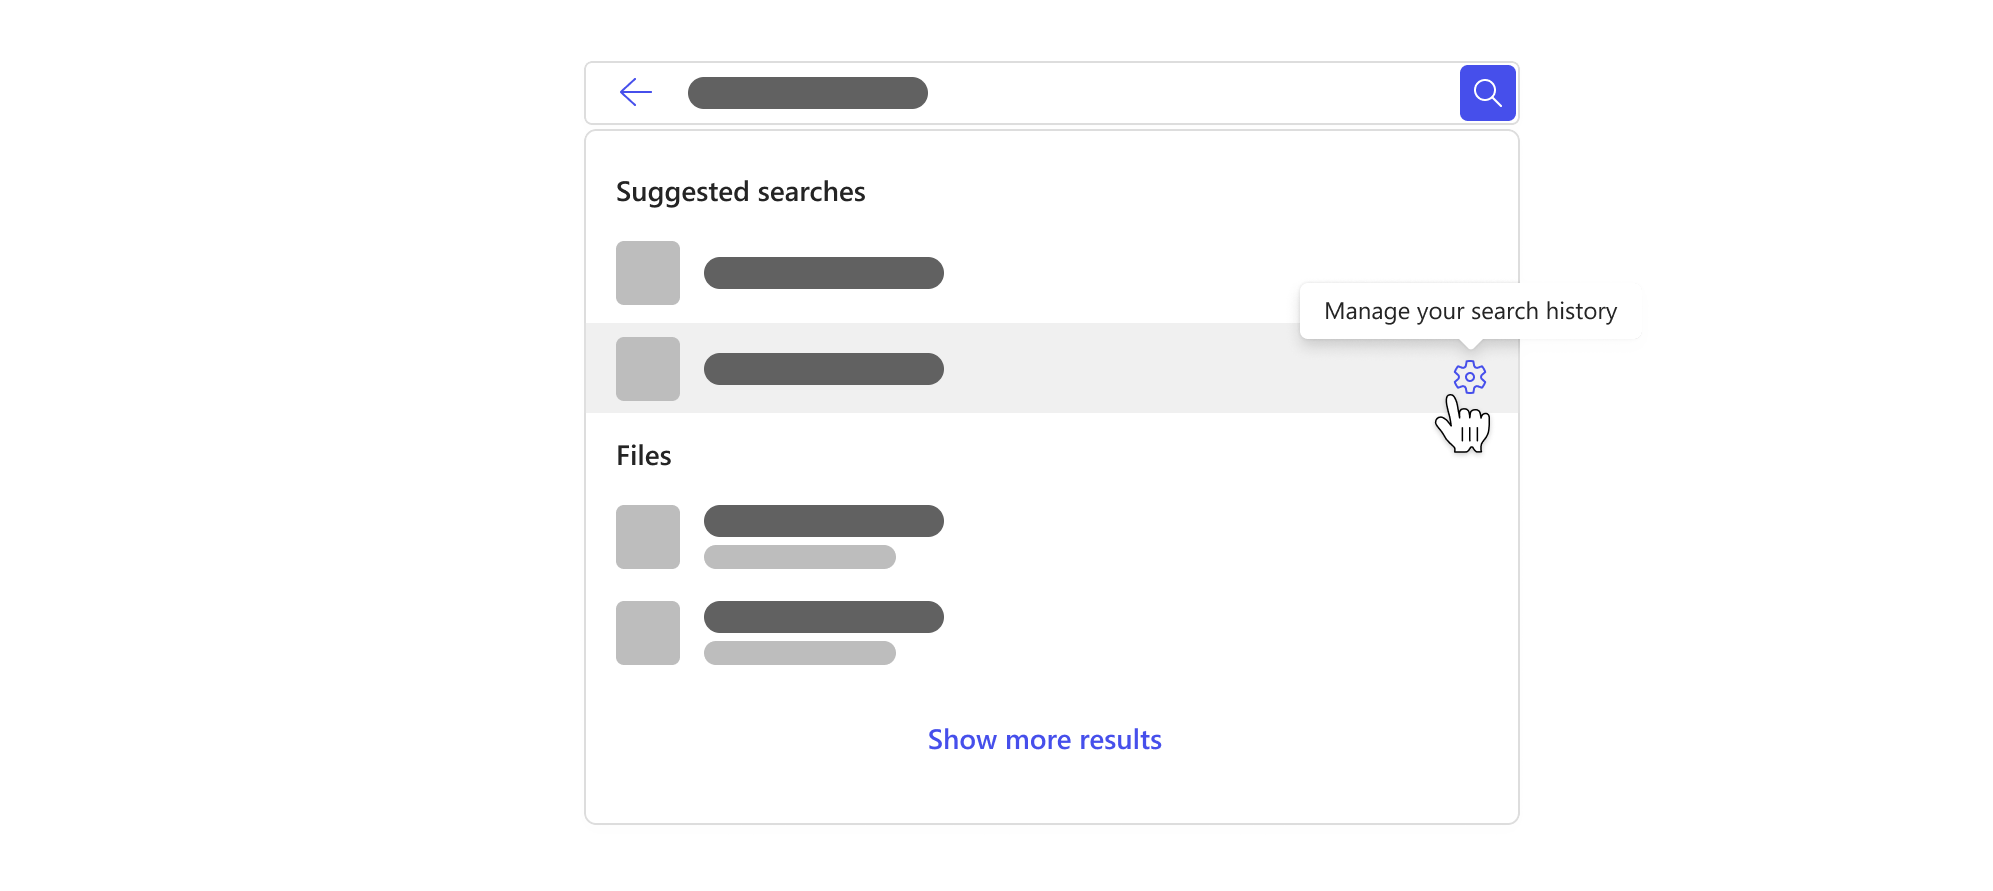 Cuadro de búsqueda con una lista desplegable con las búsquedas sugeridas basadas en el historial de búsqueda y un botón para administrar el historial de búsqueda.